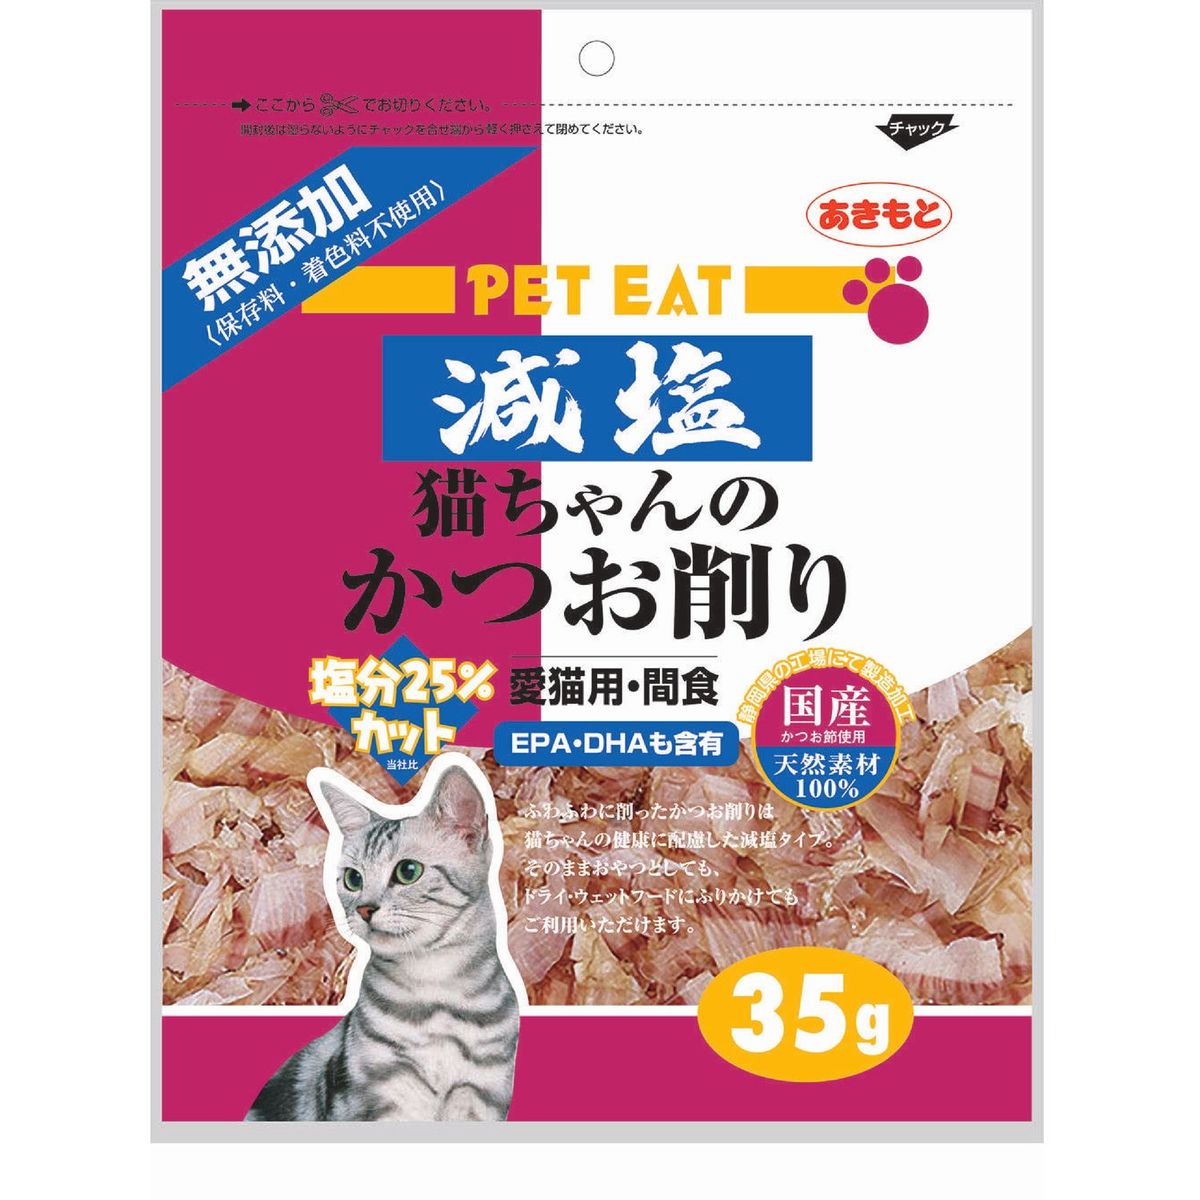 ペットイート減塩猫チャンノカツオ削リ 35g×48